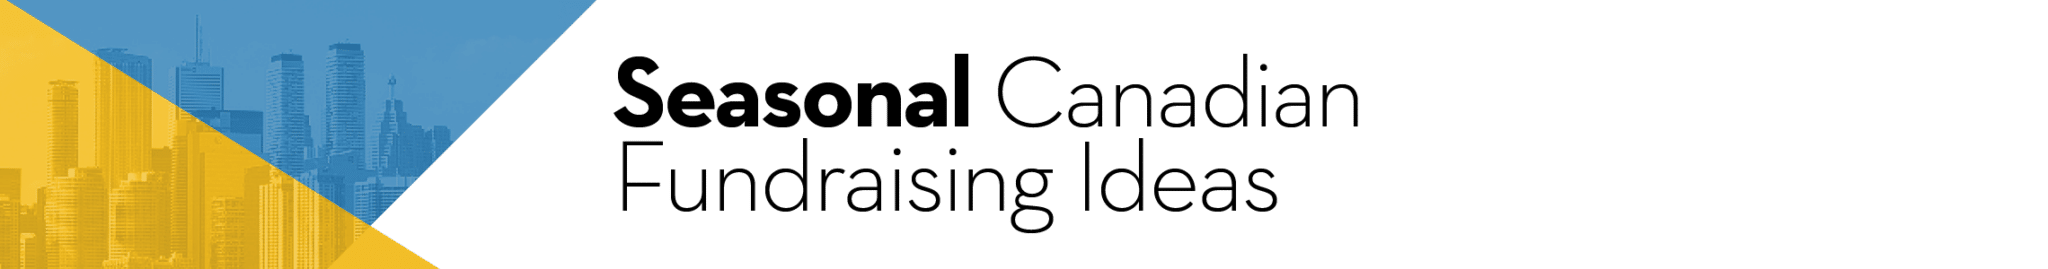 Seasonal Canadian Fundraising Ideas